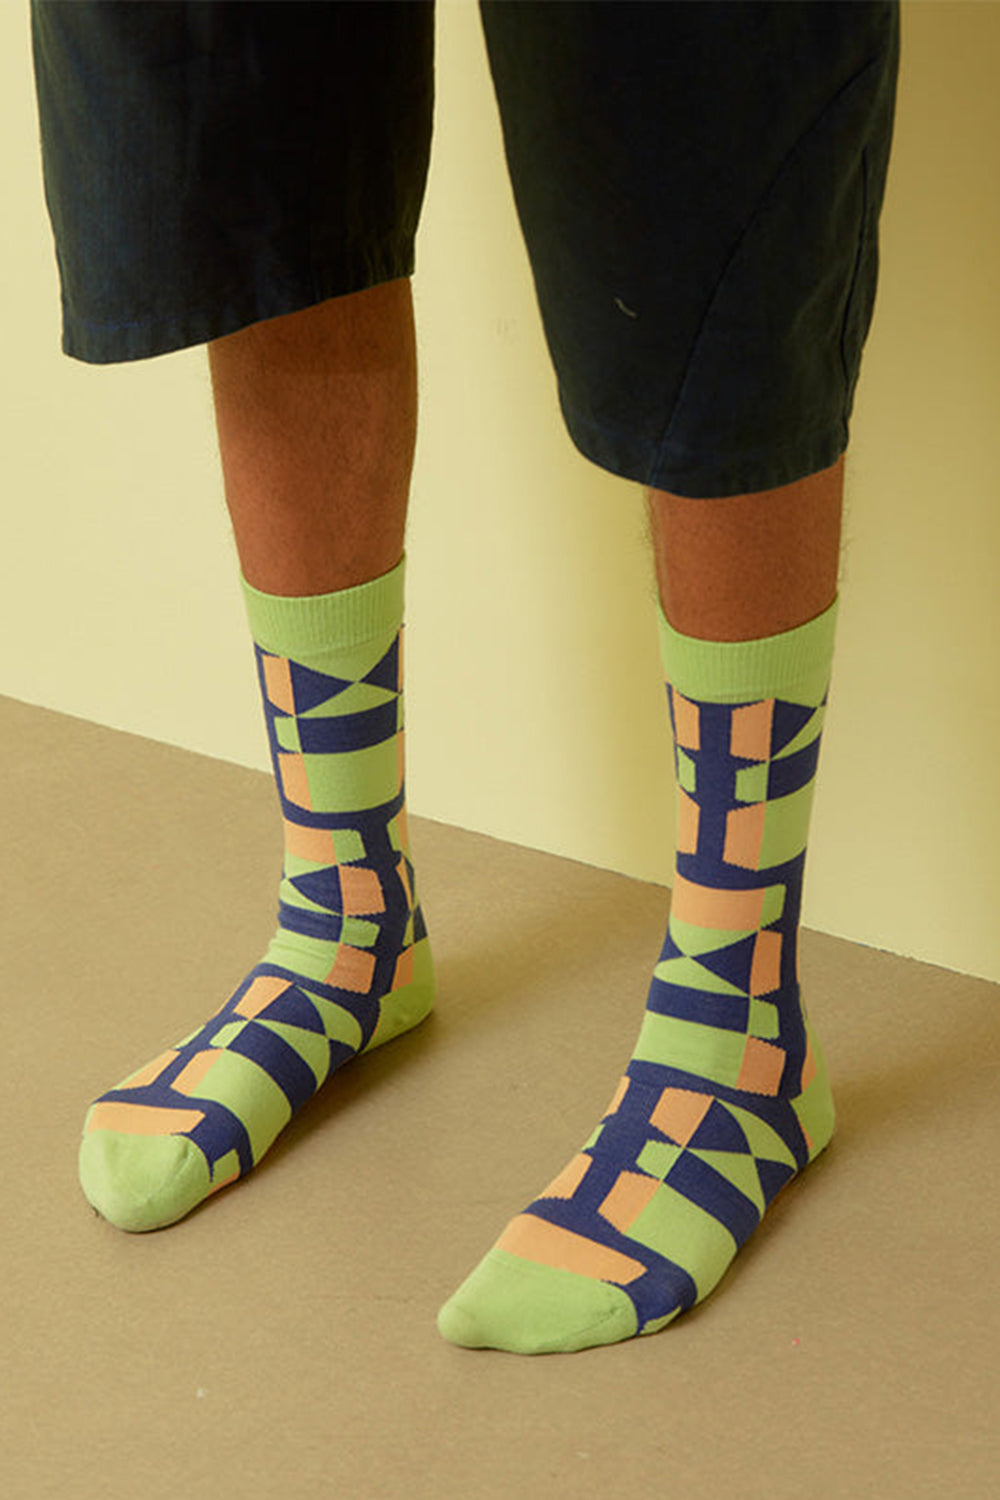 Unfolded Socks Homme, green